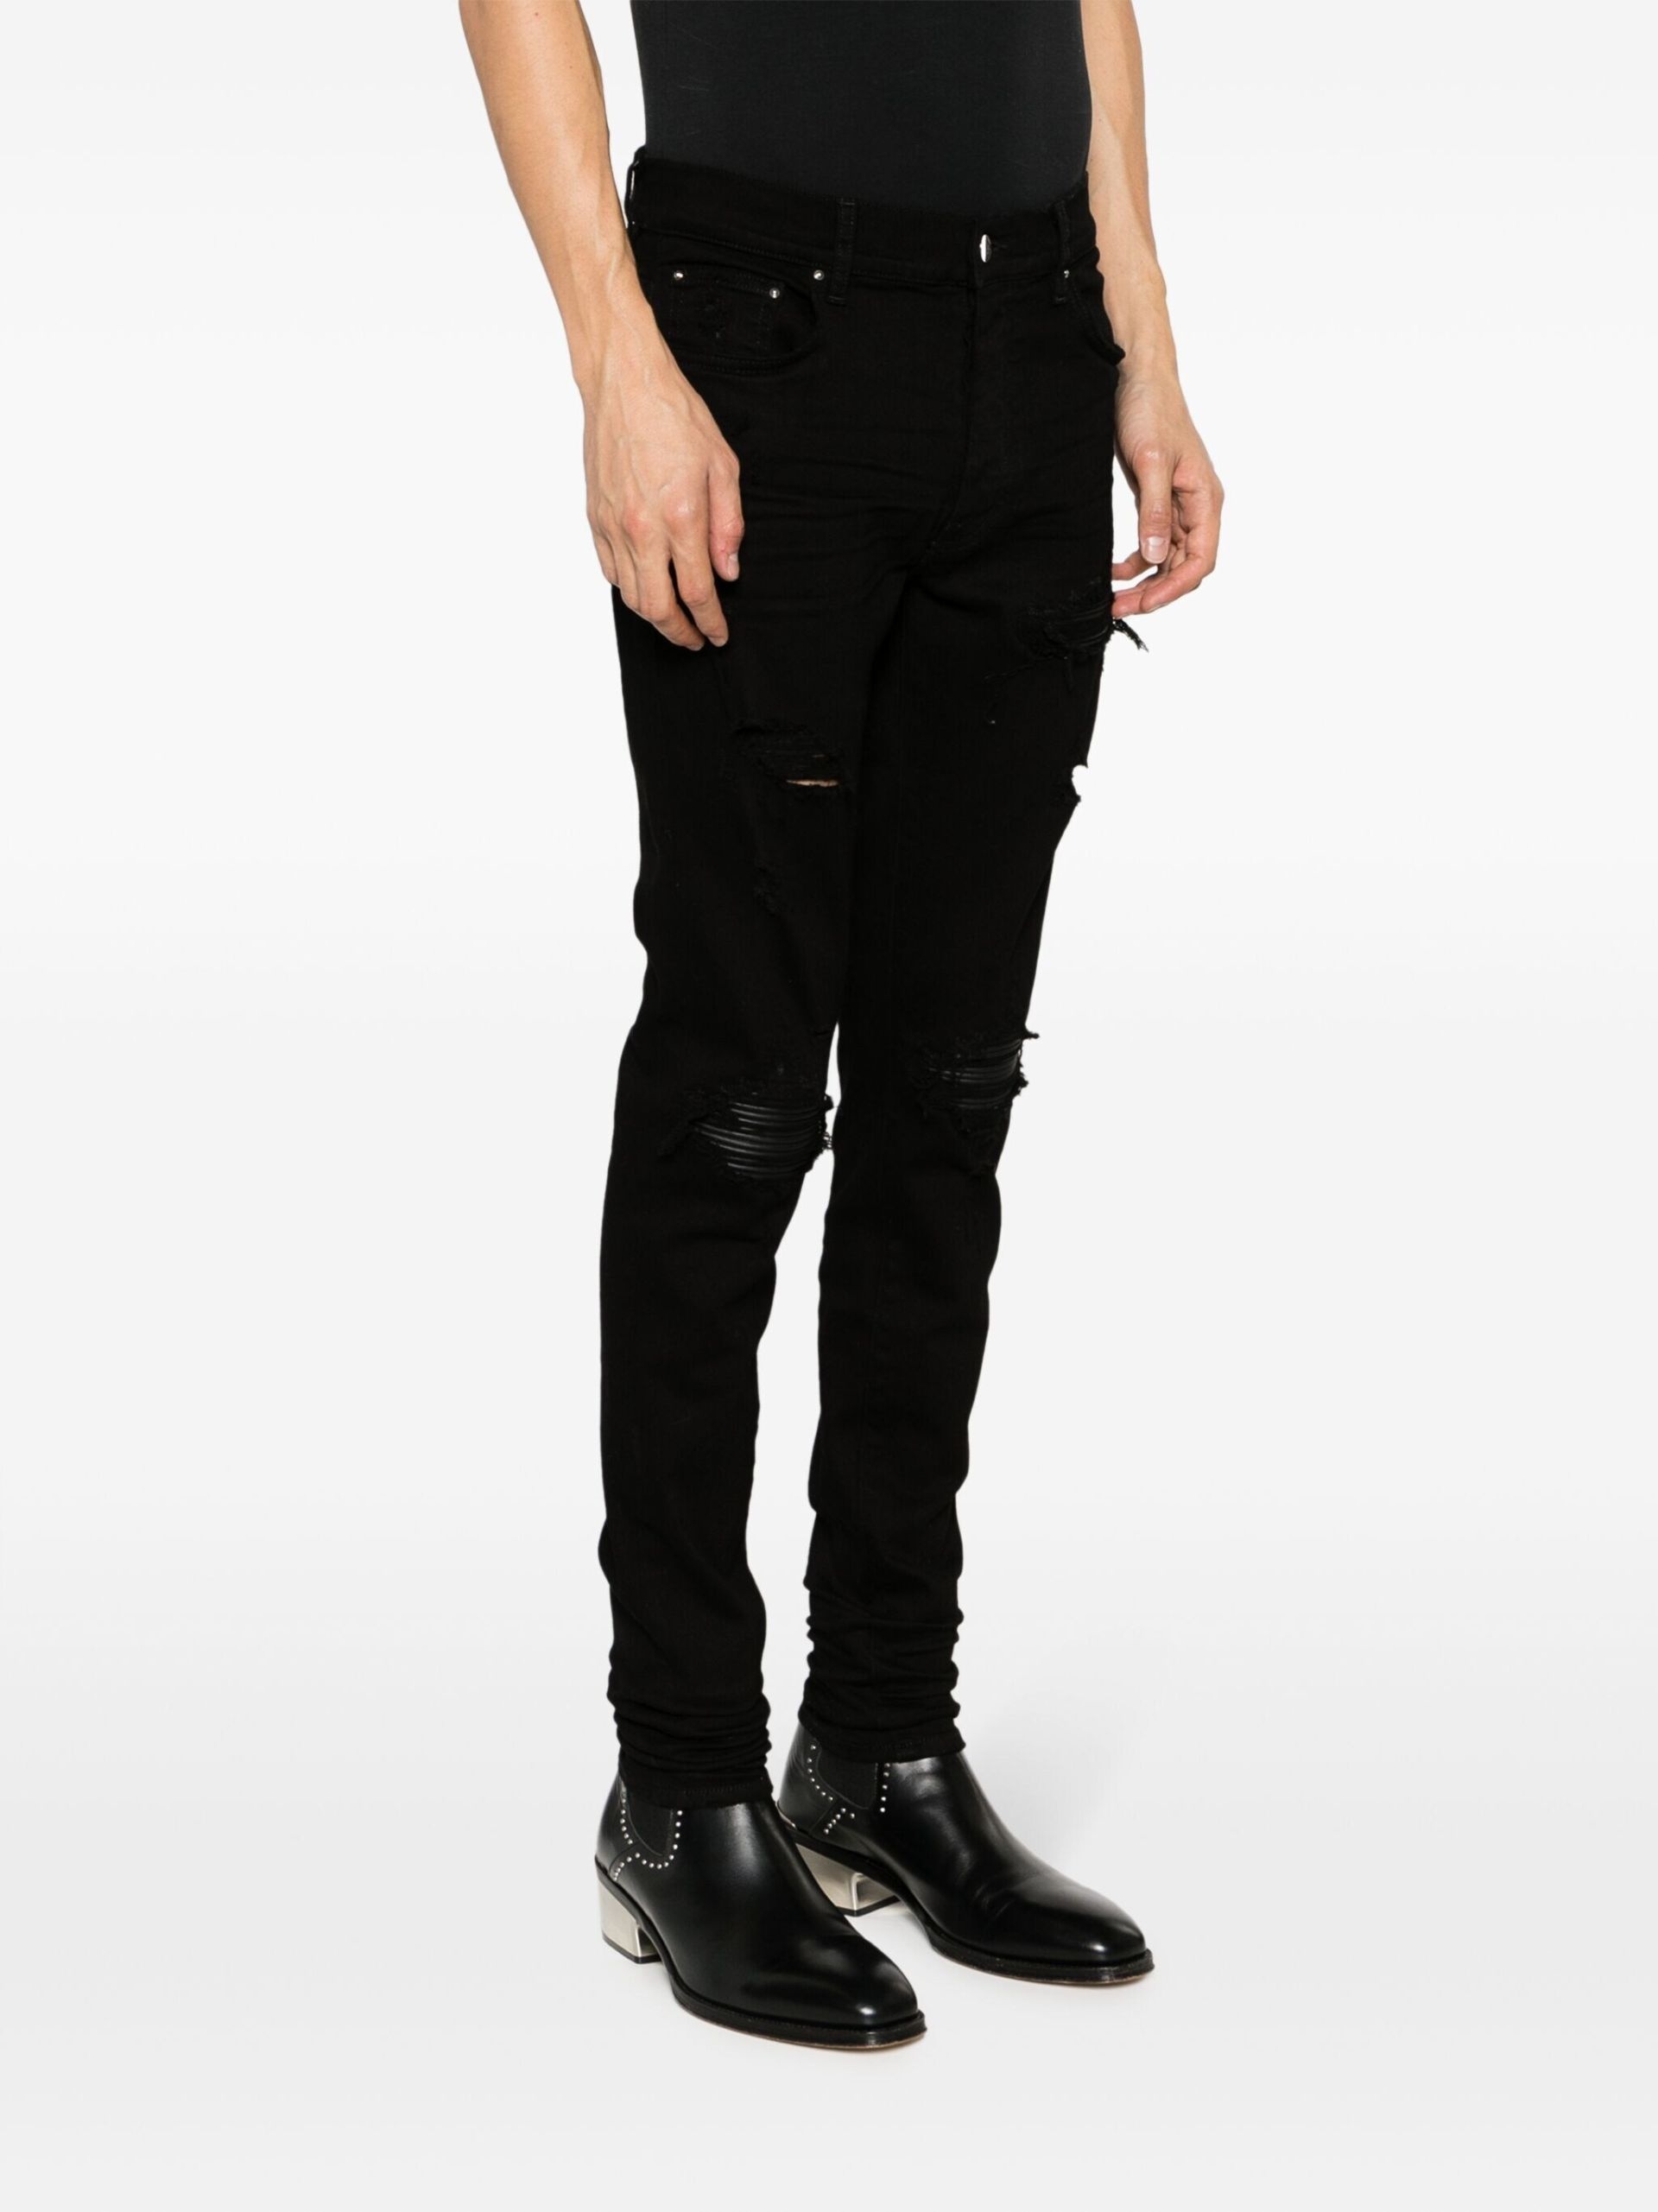 Black Distressed Skinny Cut Jeans - 3